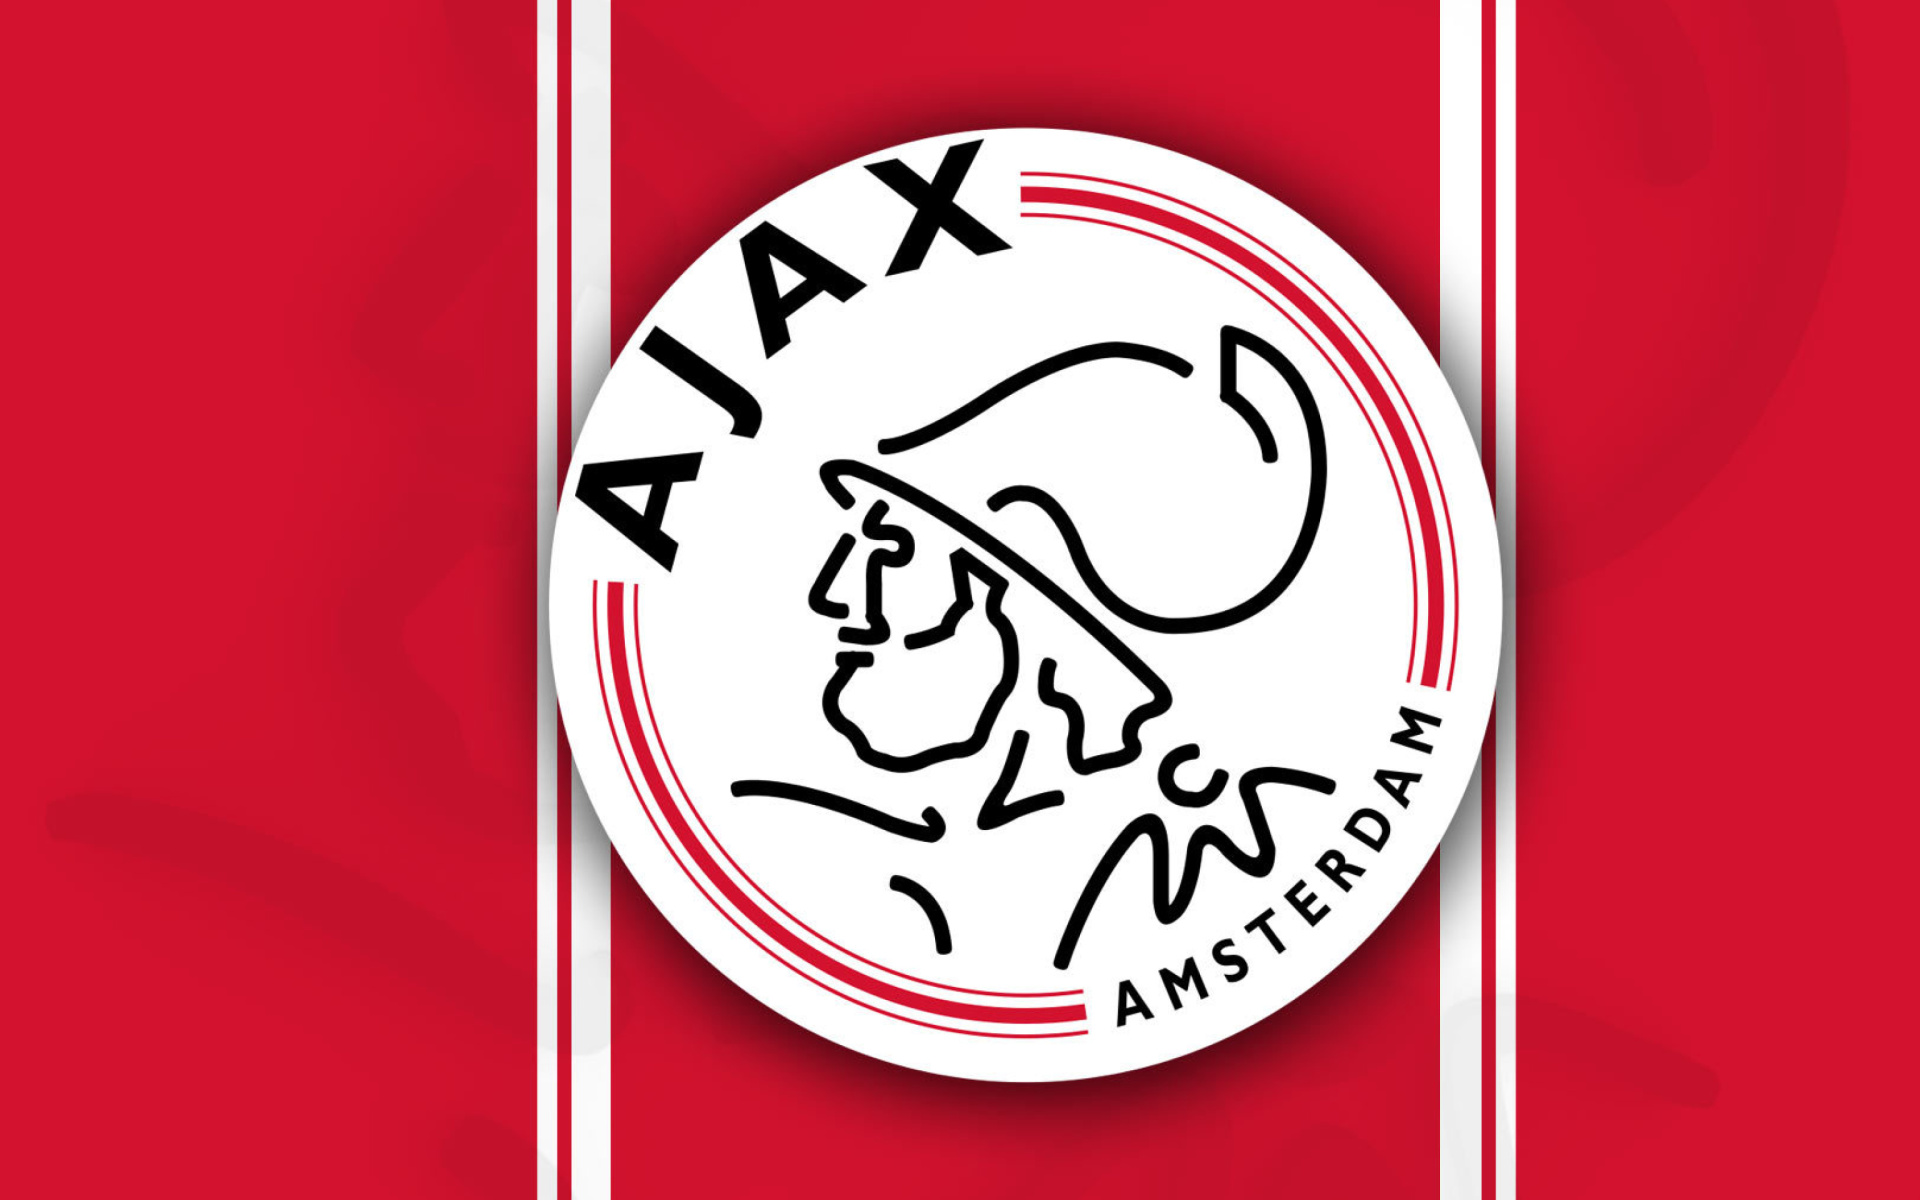 AFC Ajax Football Club wallpaper 1920x1200